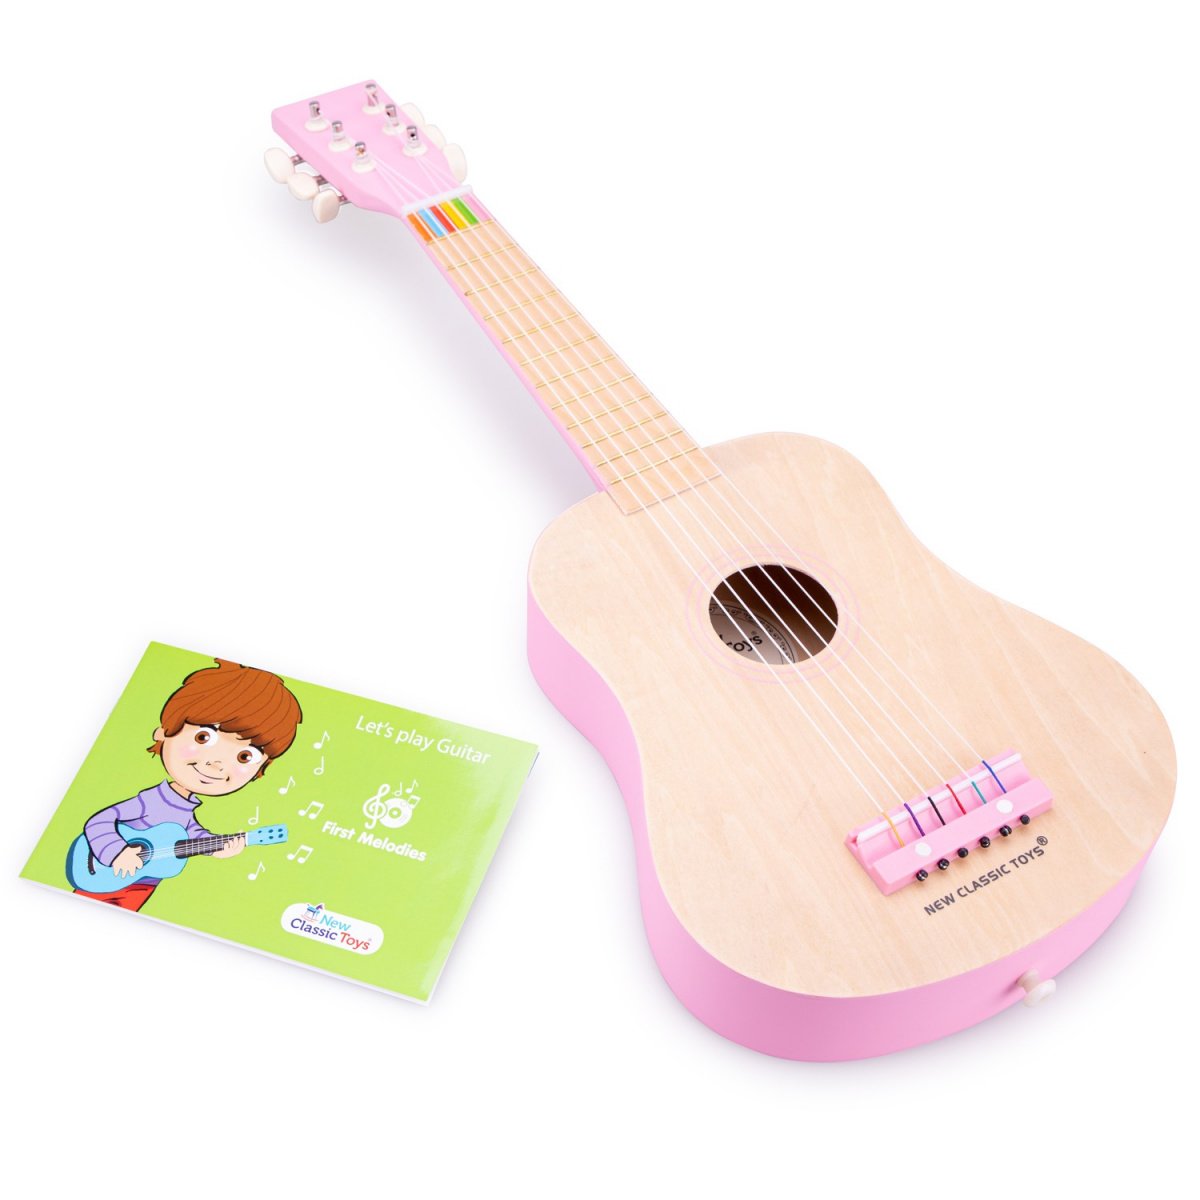 Детская гитара New Classic Toys розовая (10302) - фото 2